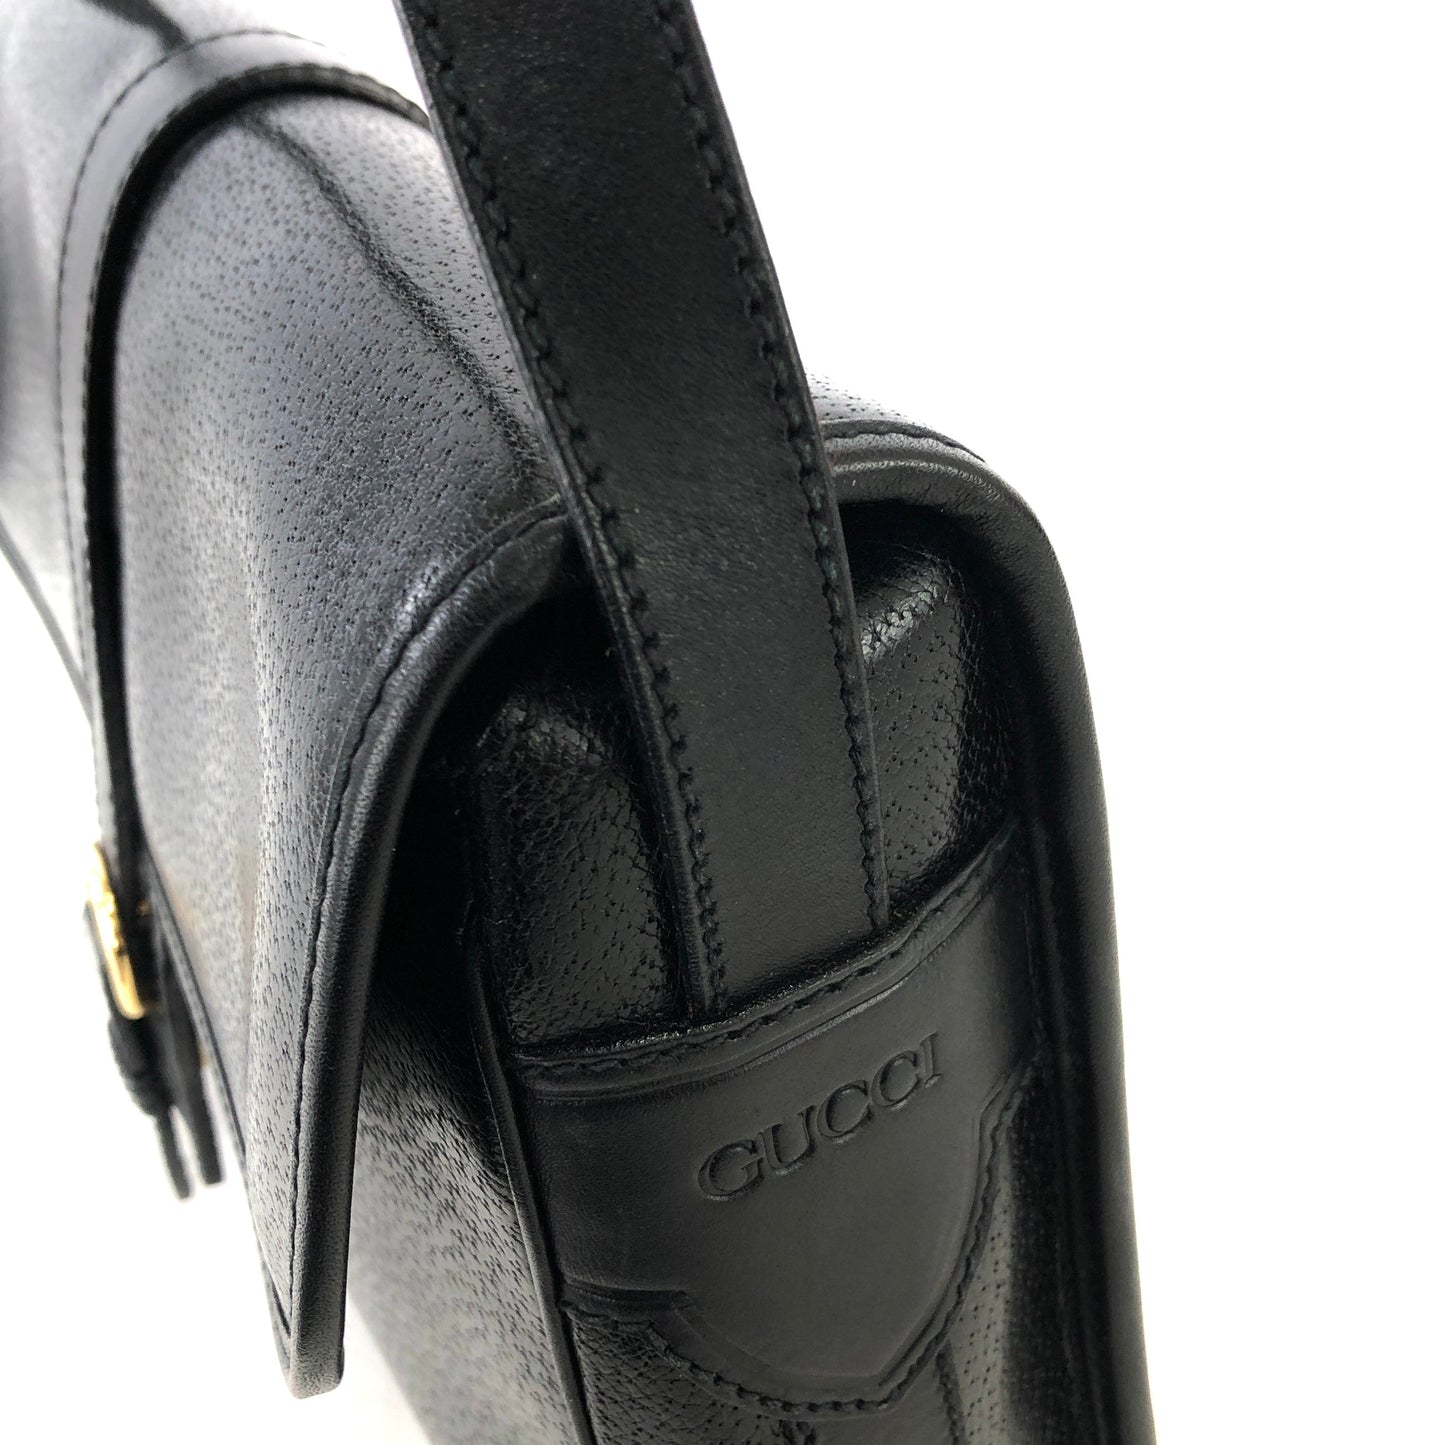 GUCCI Front buckle Leather Shoulder bag Black Vintage Old gucci dh3urc